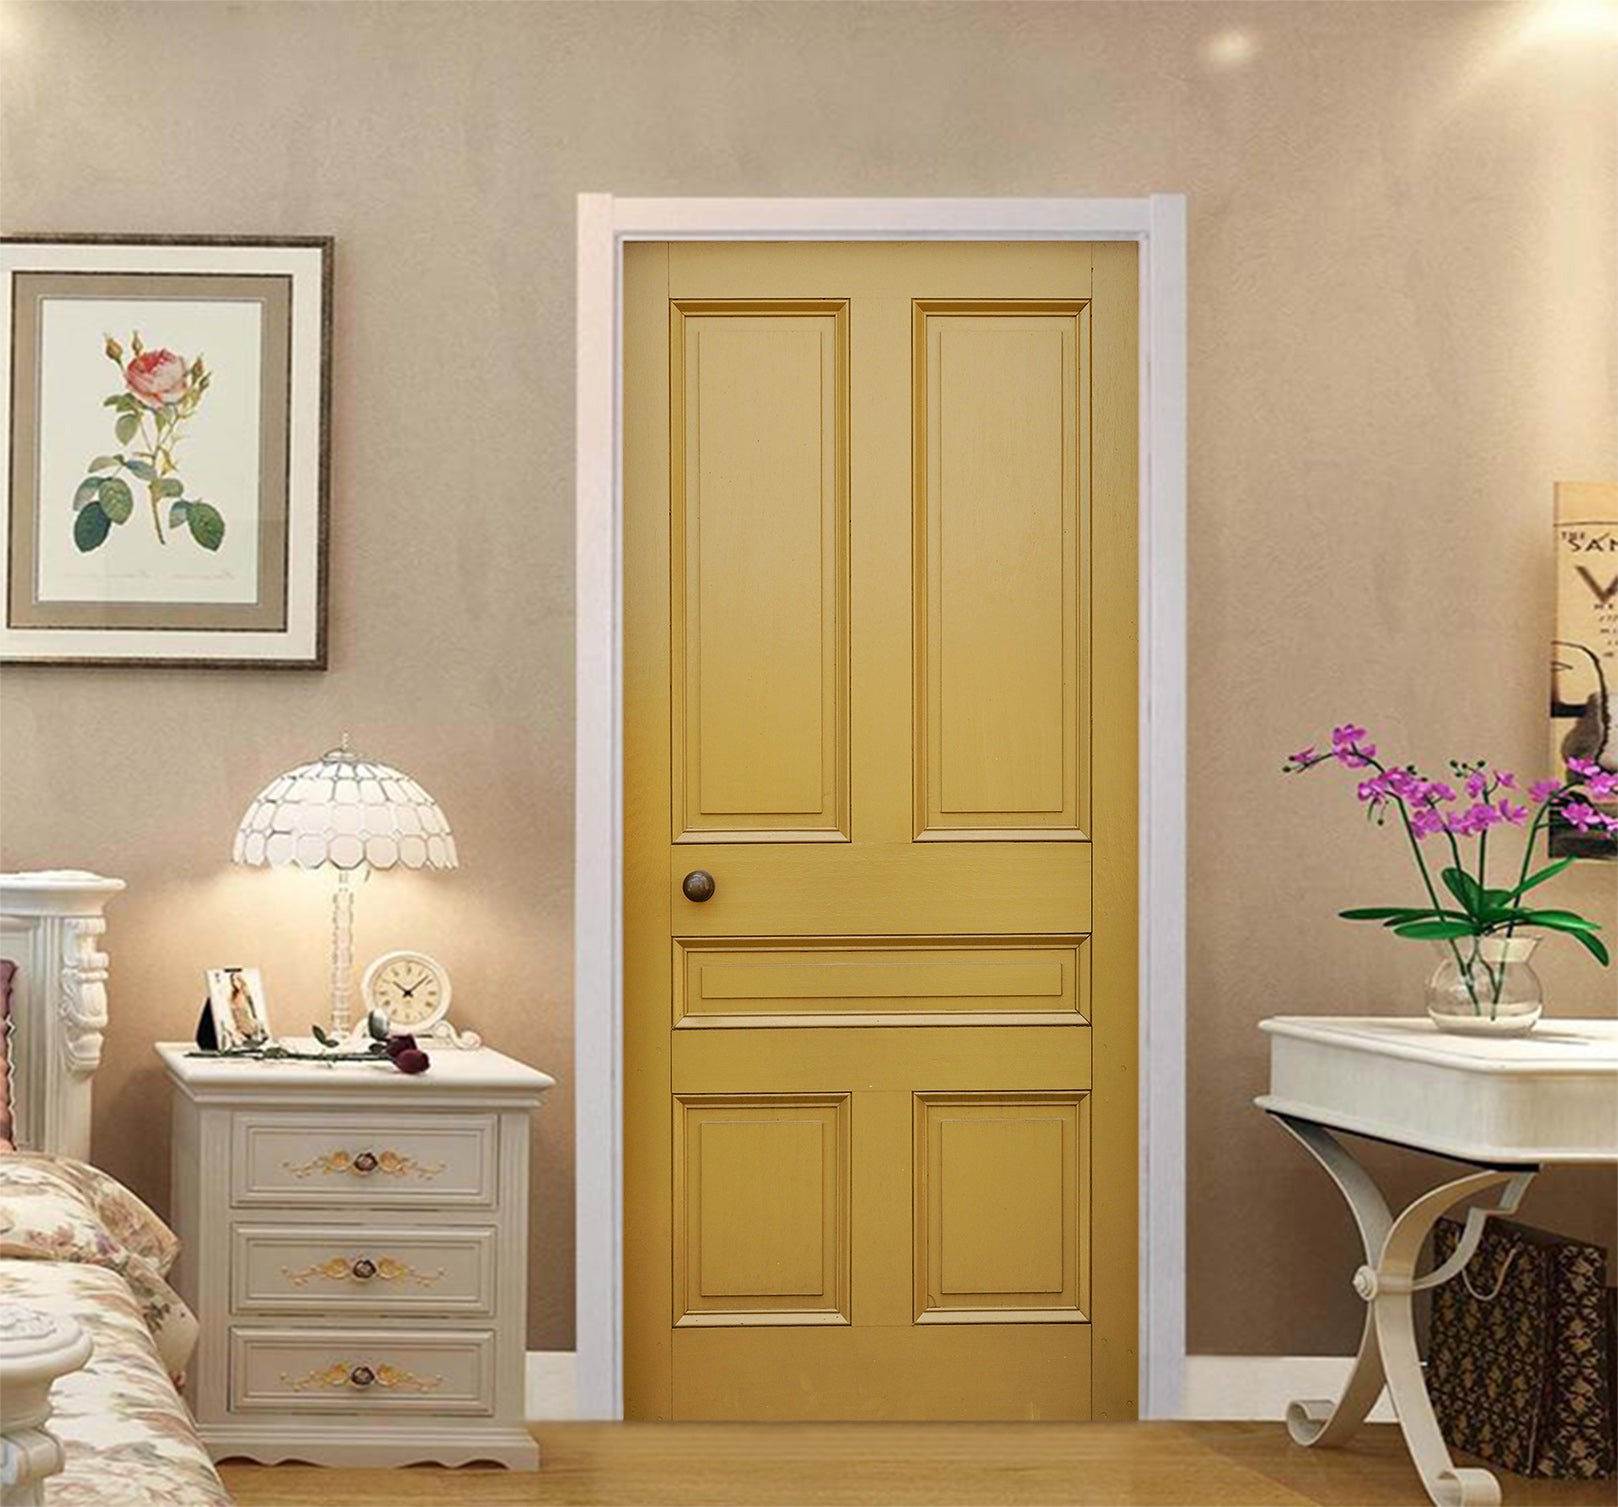 3D Golden Bedroom 002 Door Mural